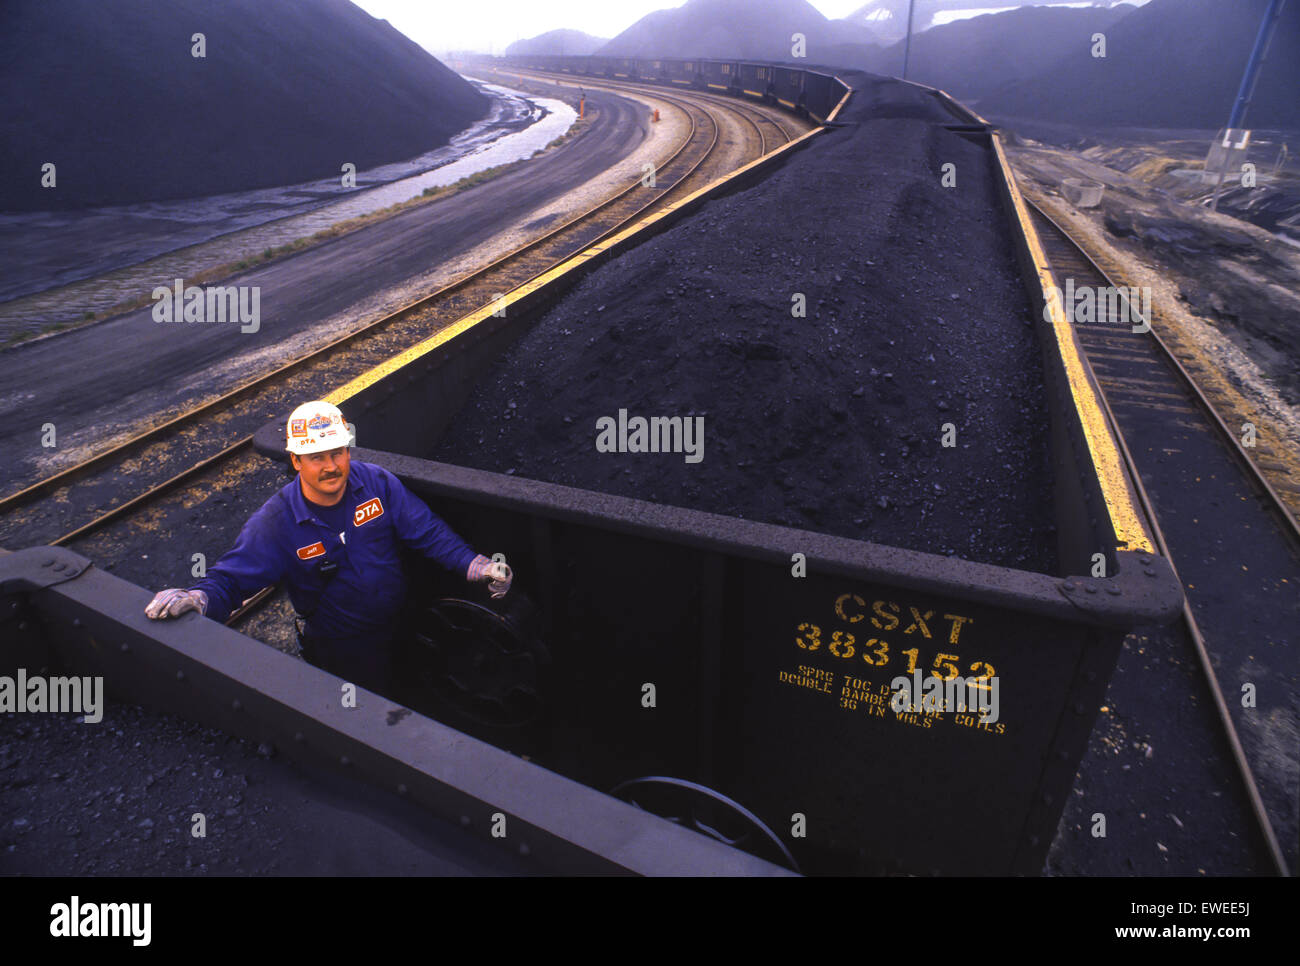 NEWPORT NEWS, VIRGINIA, USA - CSX coal cars at coal shipping terminal. Stock Photo